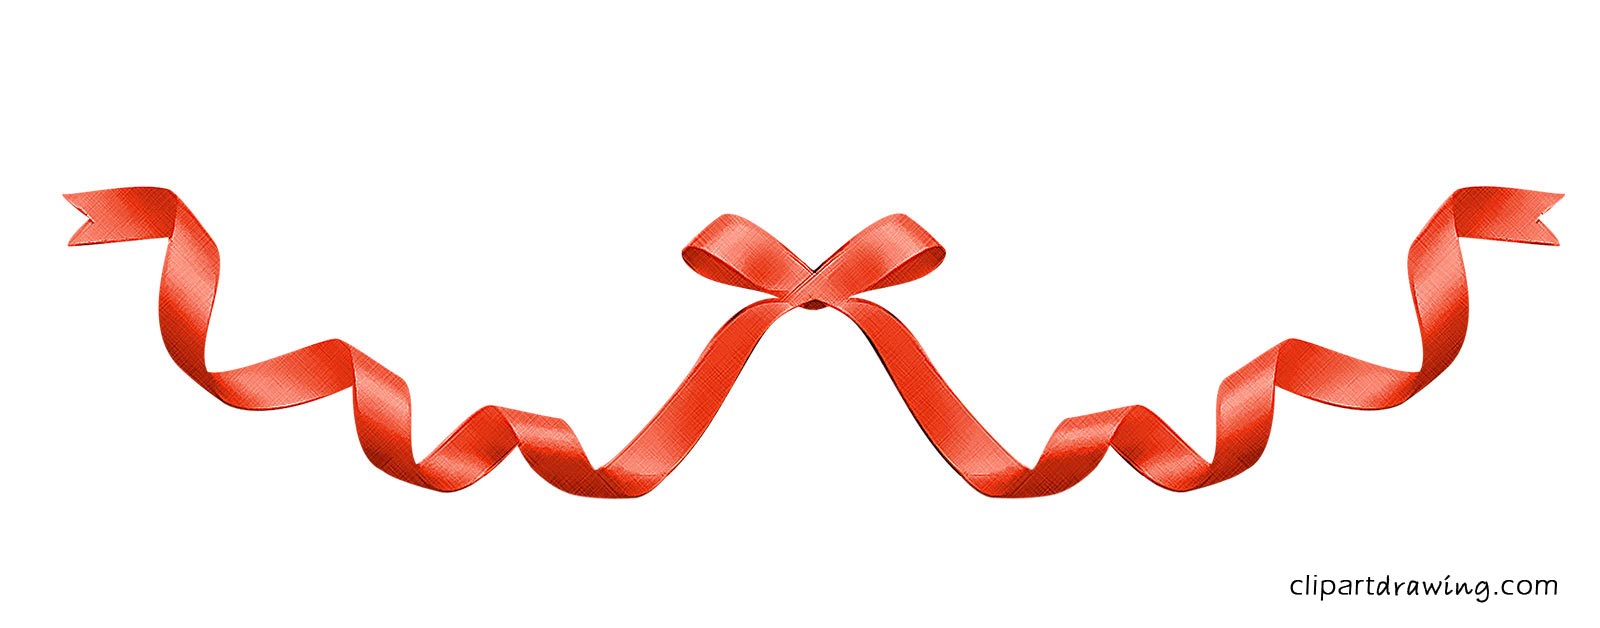 free clipart ribbon - photo #49